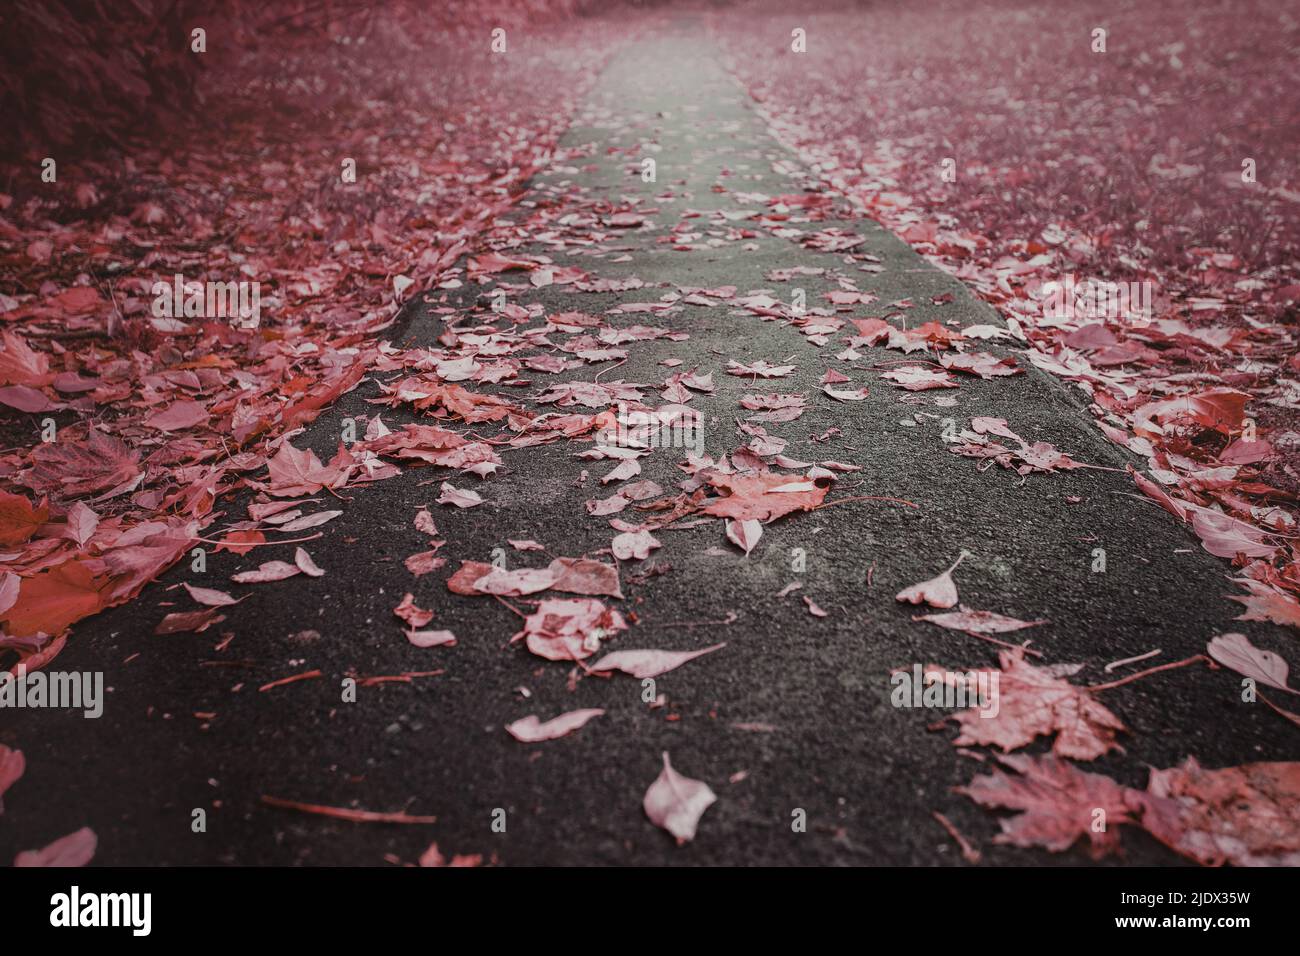 Des feuilles jaunes et rouges se trouvent sur la route. Feuilles d'érable sur l'asphalte. Automne de feuilles. Les feuilles d'érable ont décollé des arbres. Feuilles tombées sous la pluie. Banque D'Images